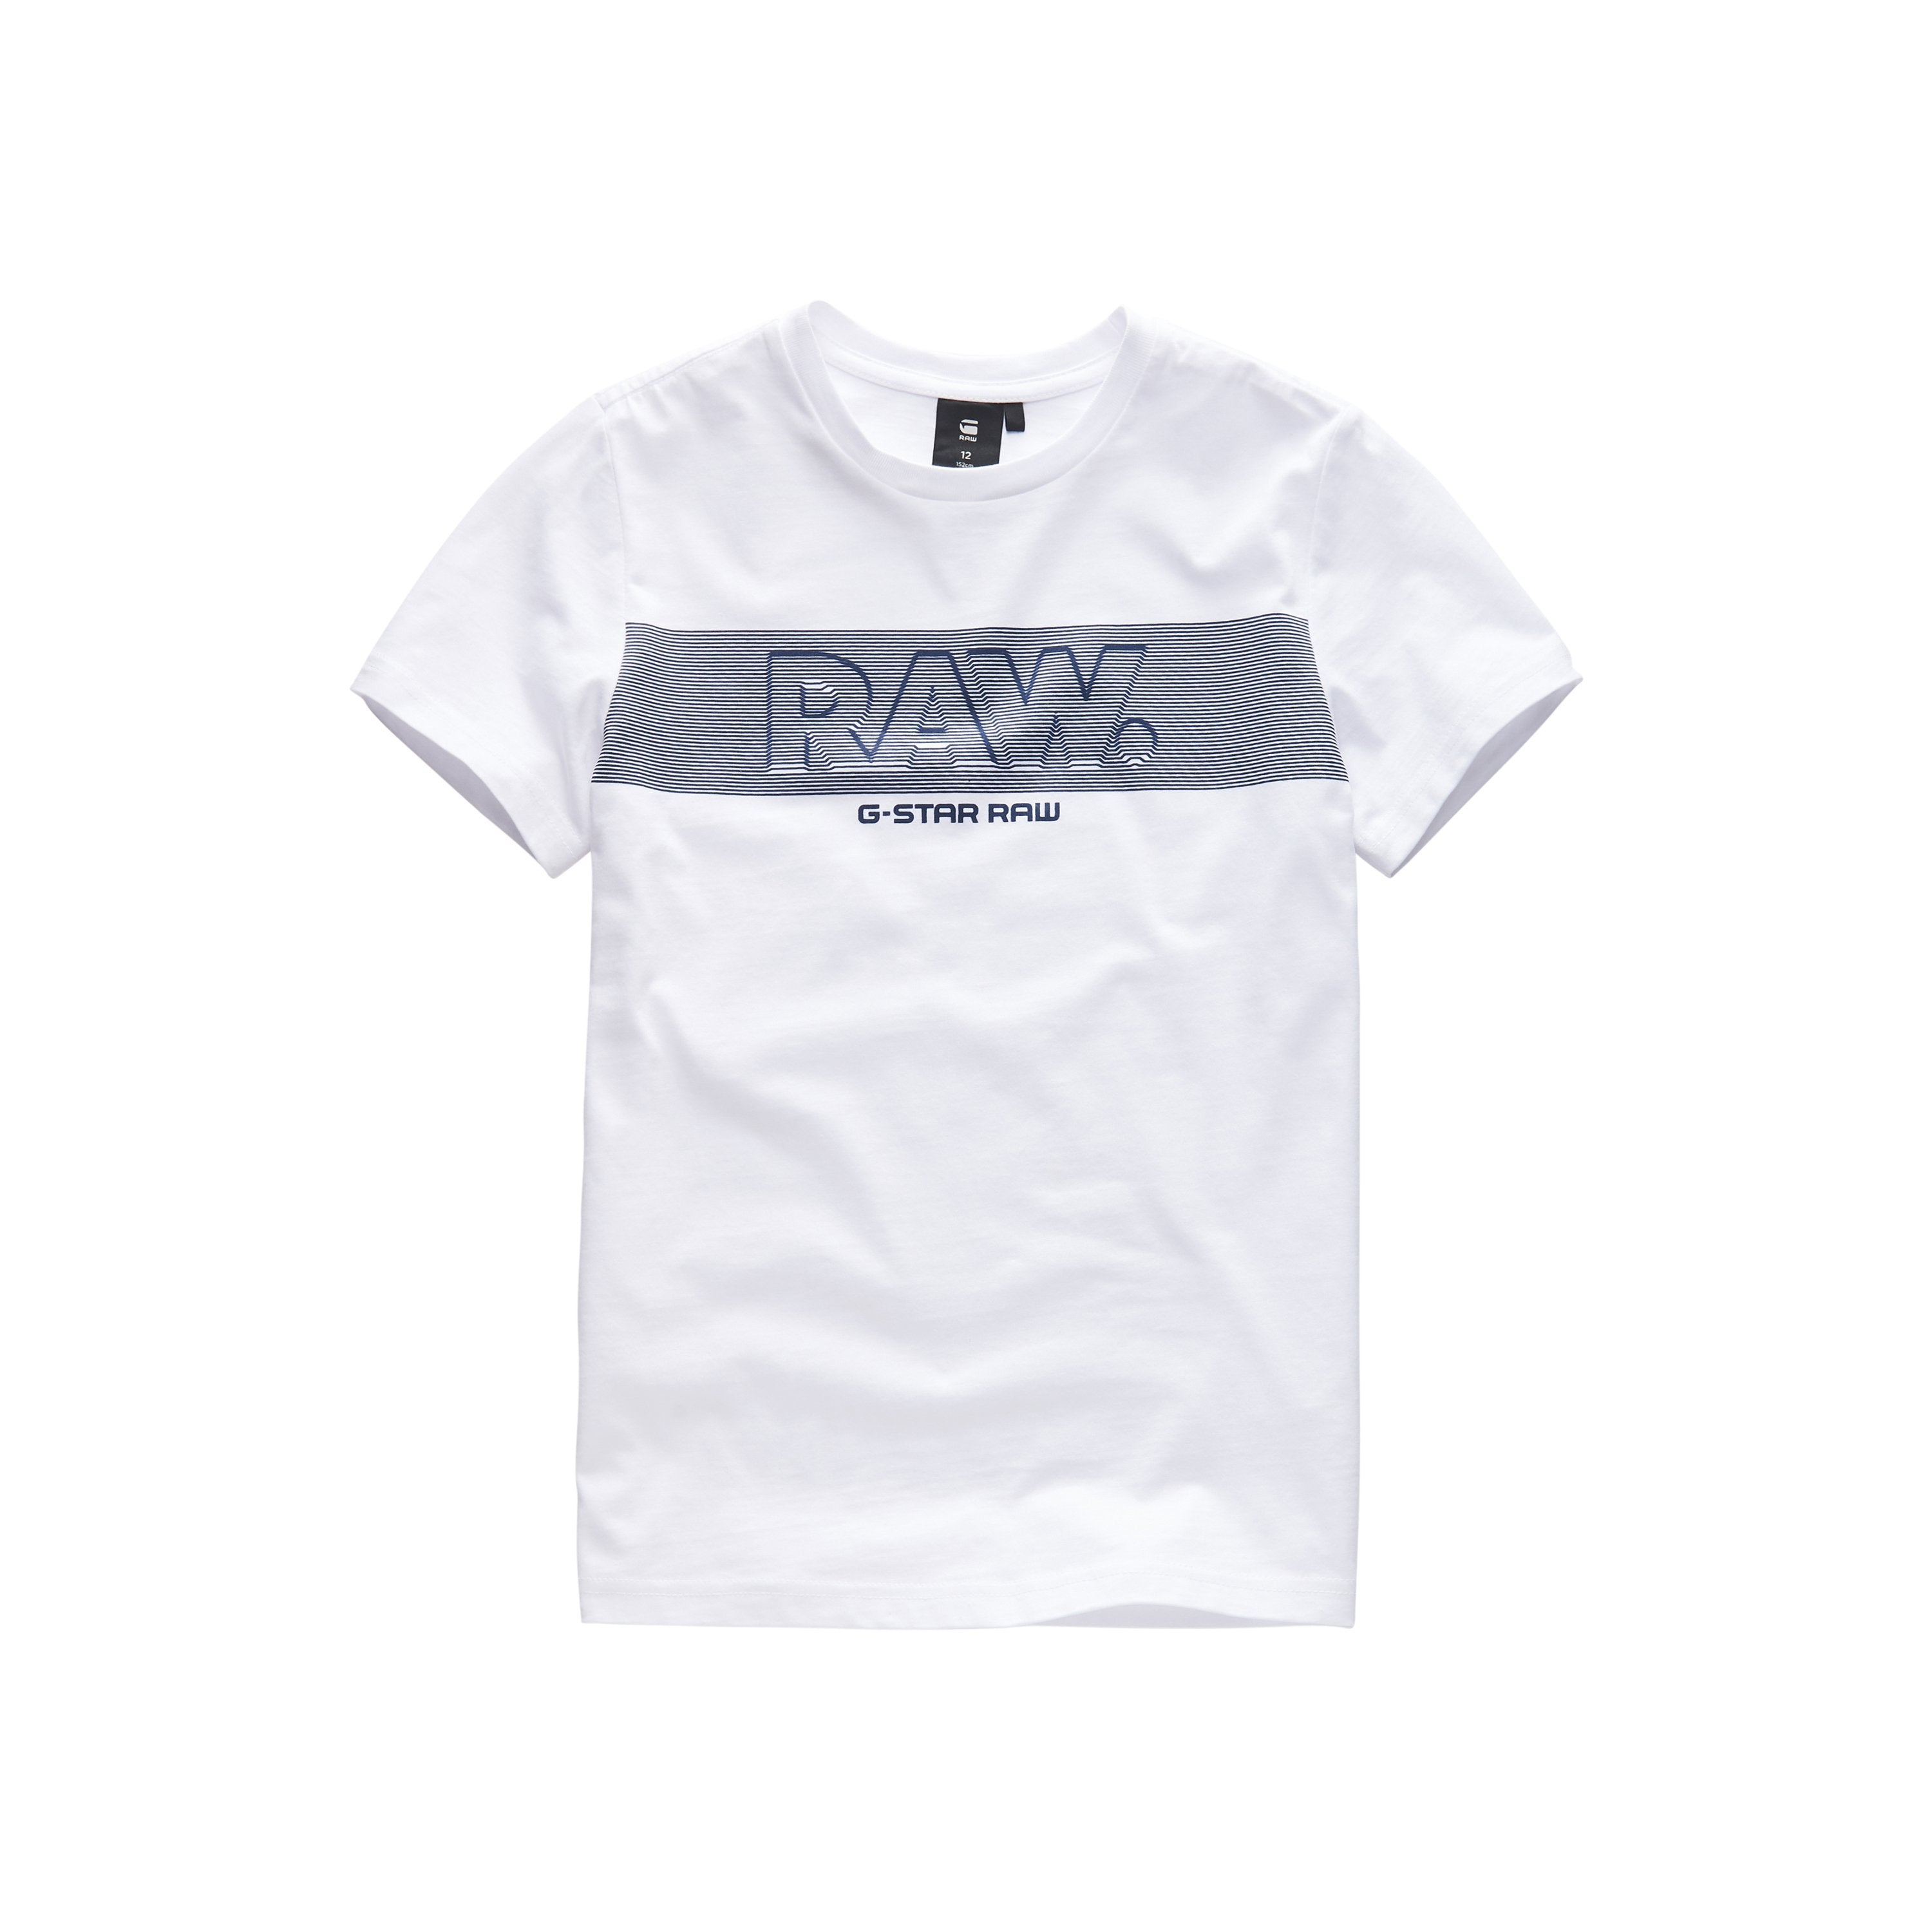 Jongens Tee Shirt van G-Star Raw in de kleur White in maat 128.